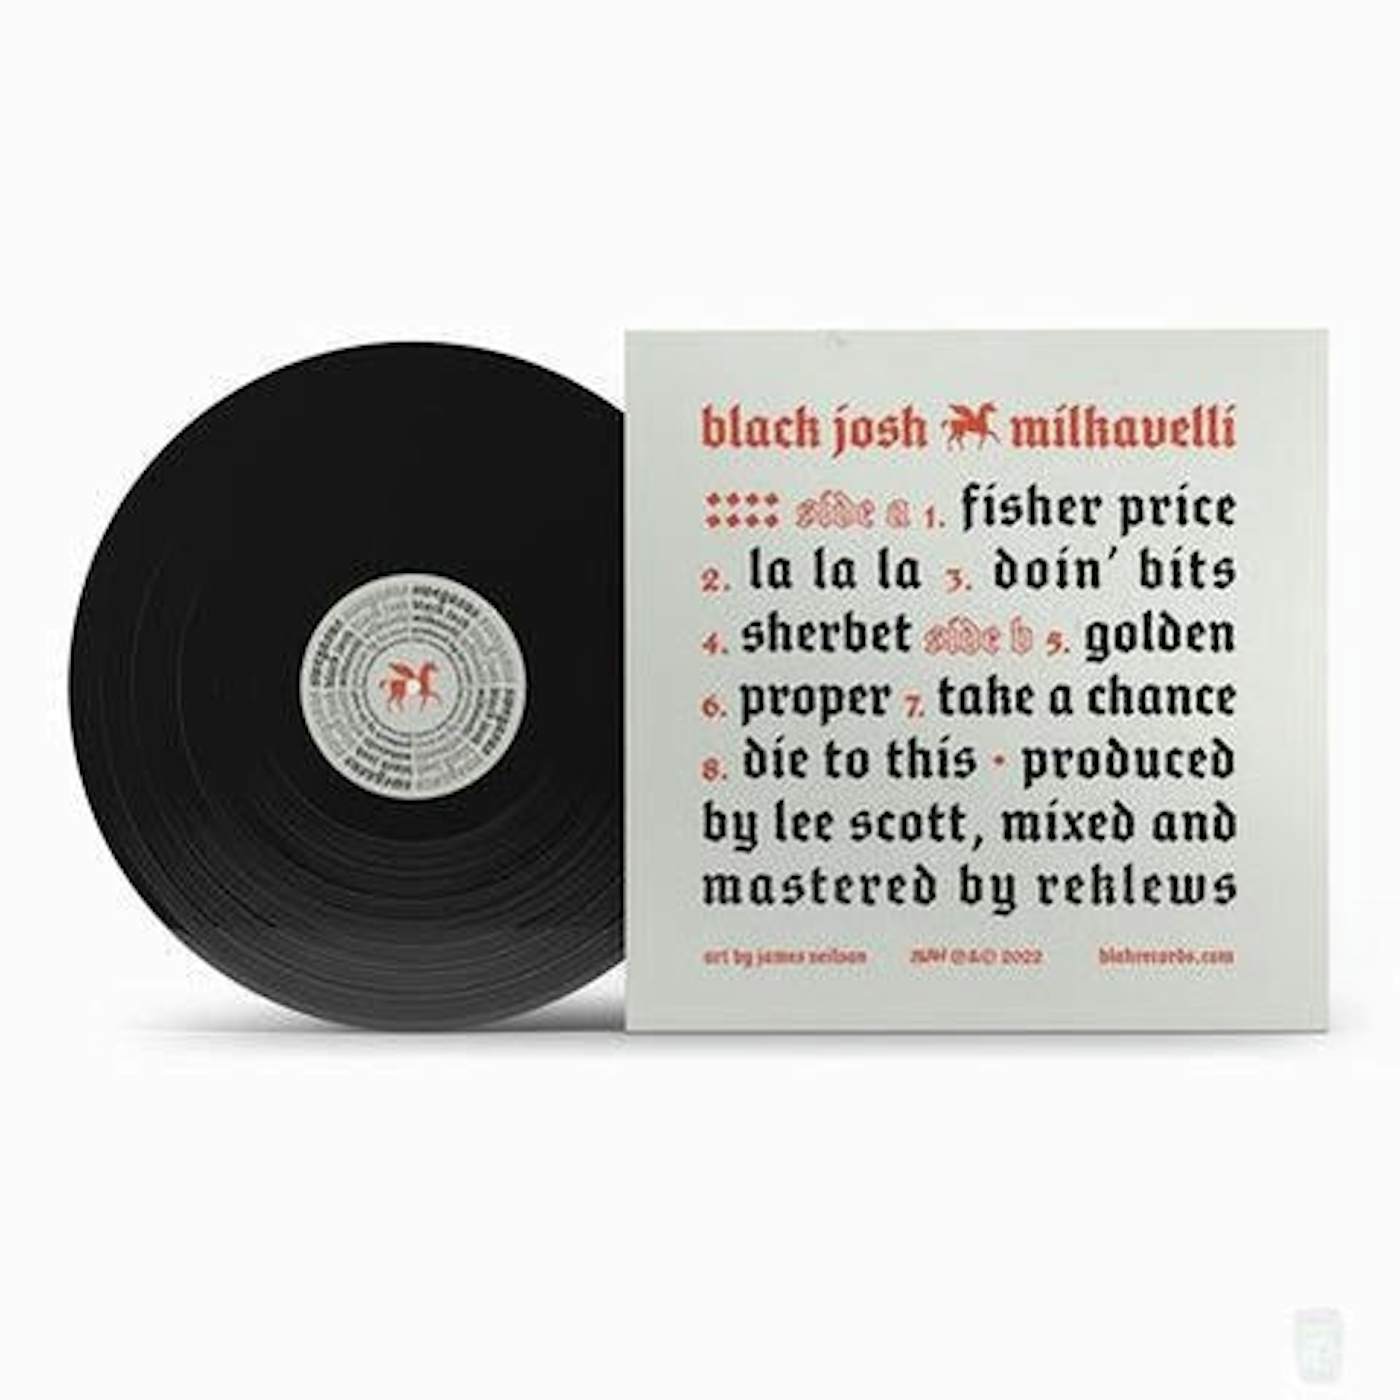 Black Josh x Milkavelli 'Swegasus' (Limited Edition Black 12" Vinyl)